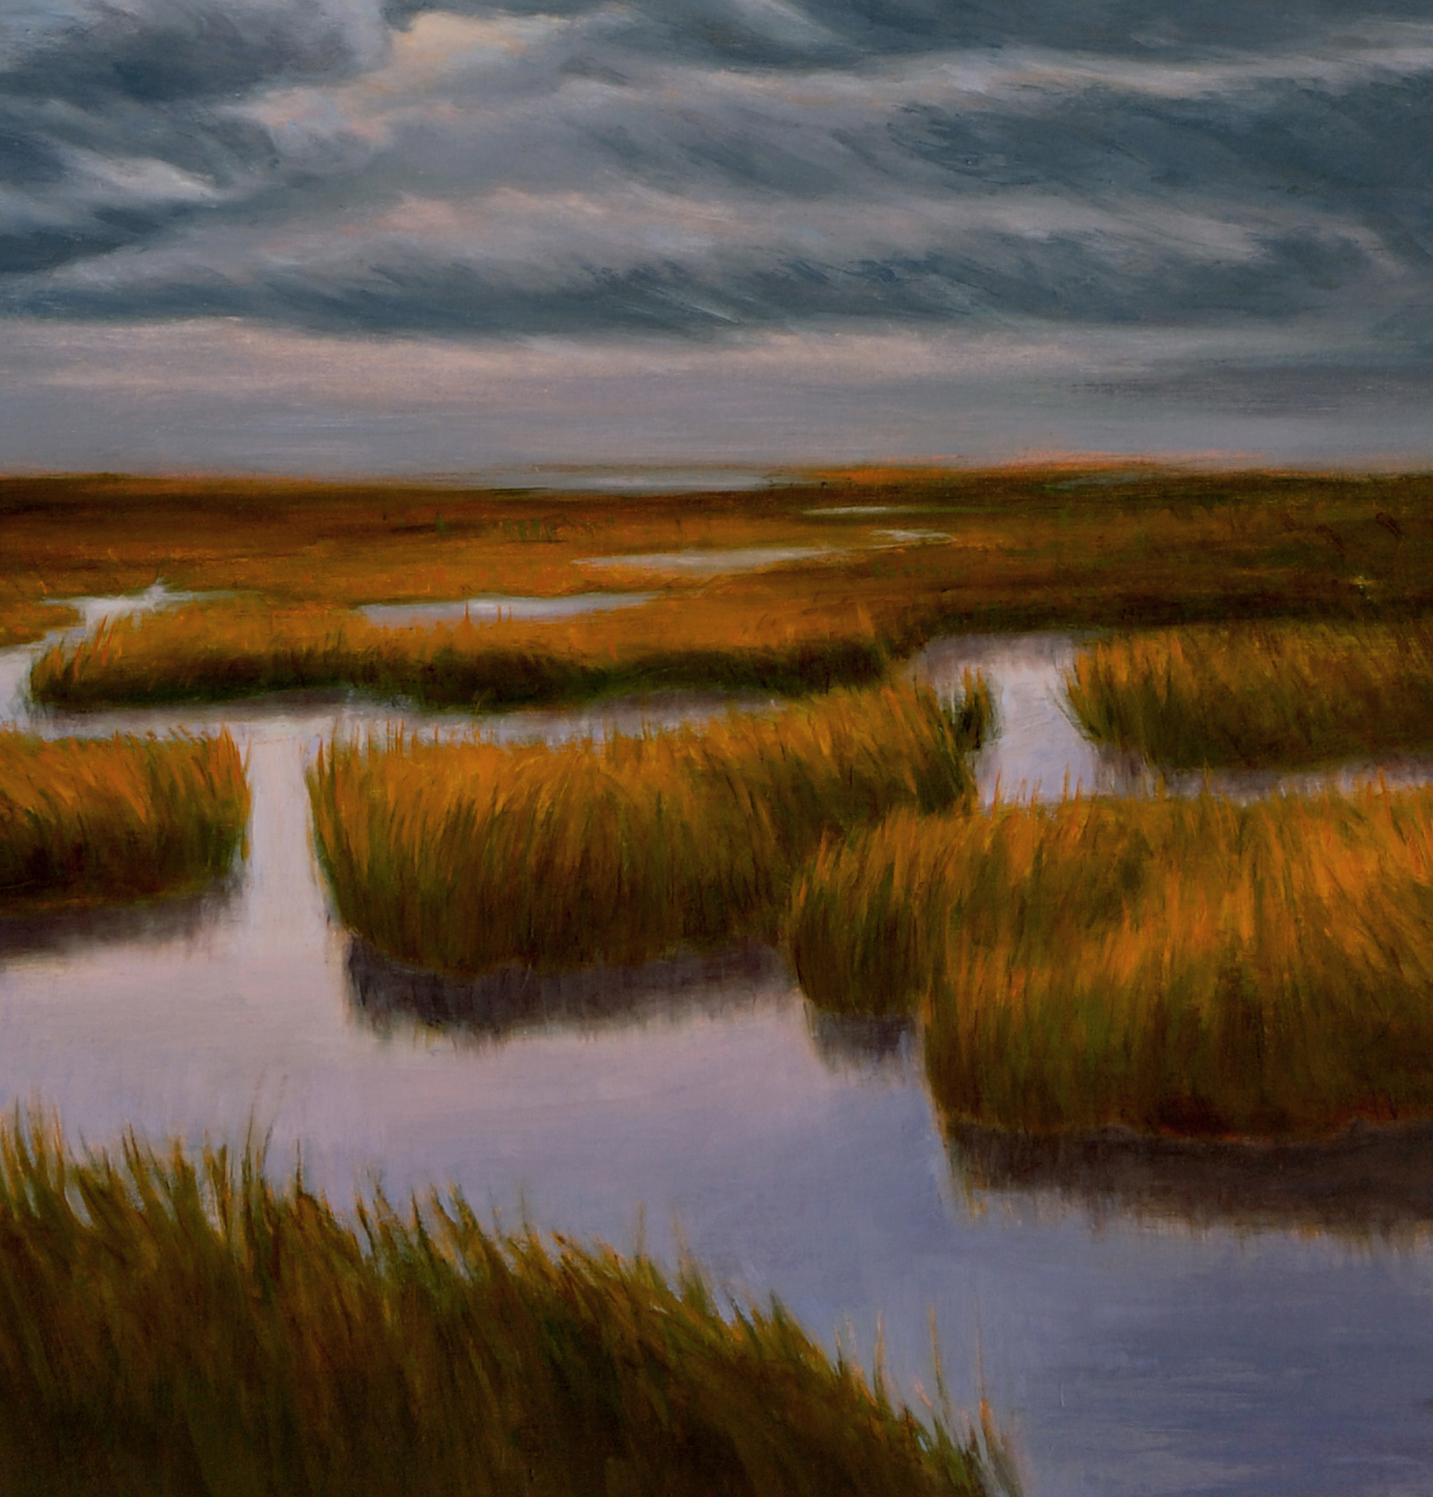 Le labyrinthe des marais représente une eau calme à la limite de la sauvagerie. Un ciel turbulent recouvre des eaux calmes. Un chemin sinueux nous invite à poursuivre notre chemin à travers de mystérieuses herbes à moitié submergées, invitant à la